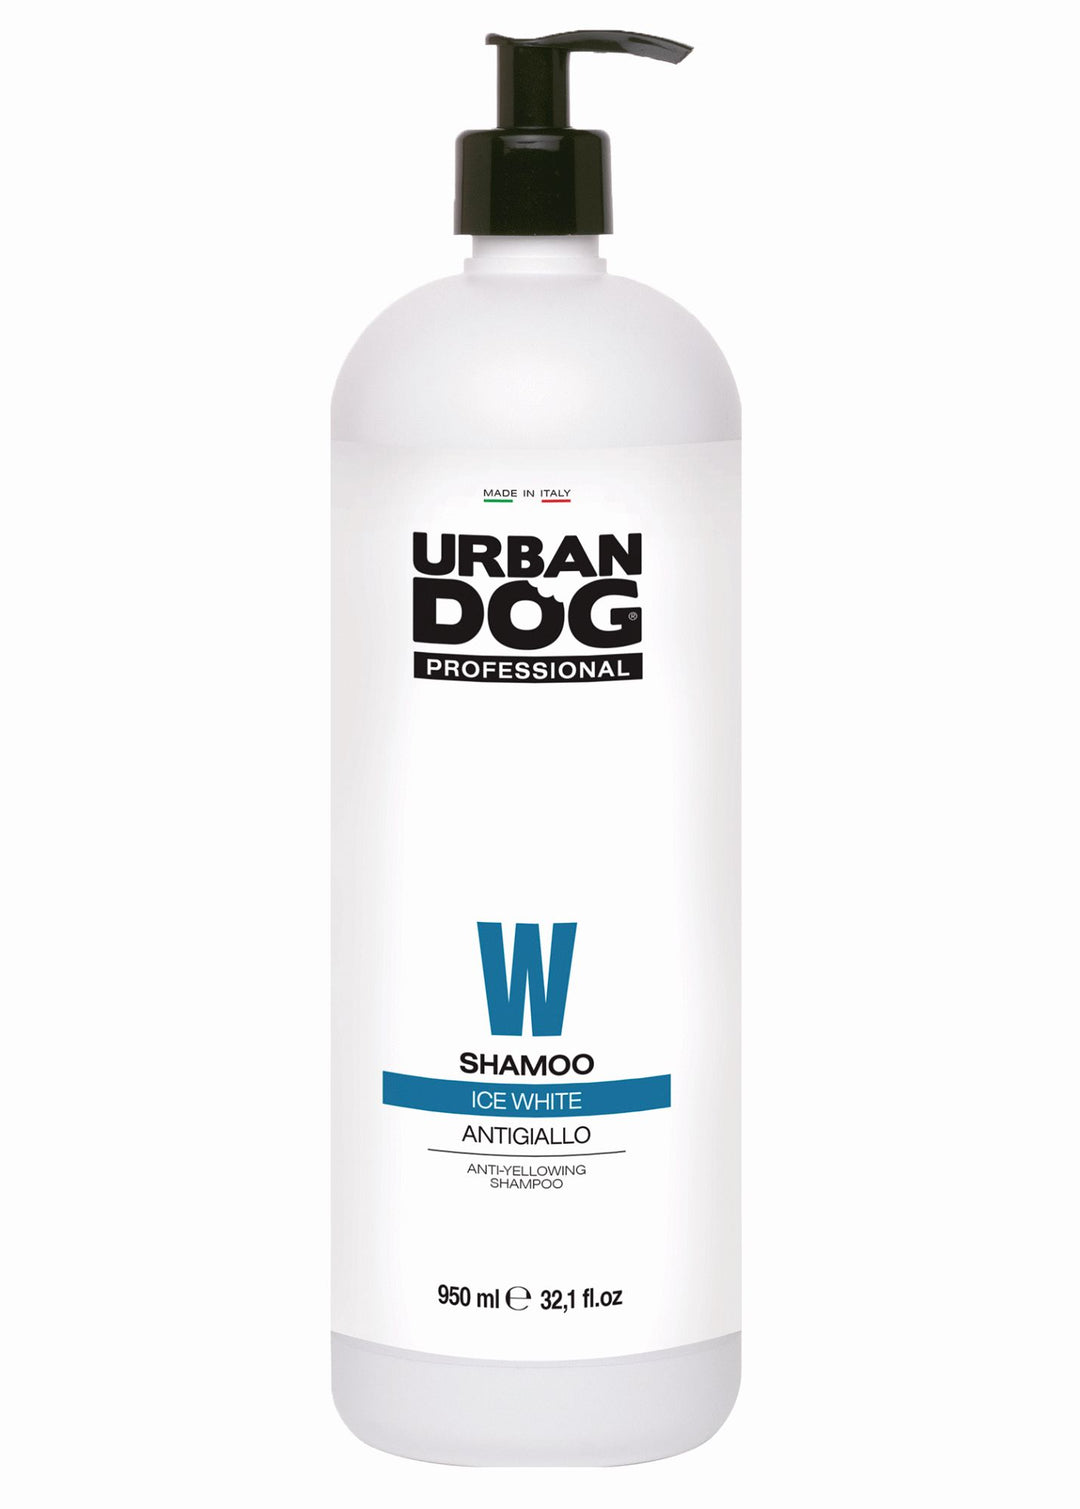 Urban dog ice white shampoo , 1 Ltr